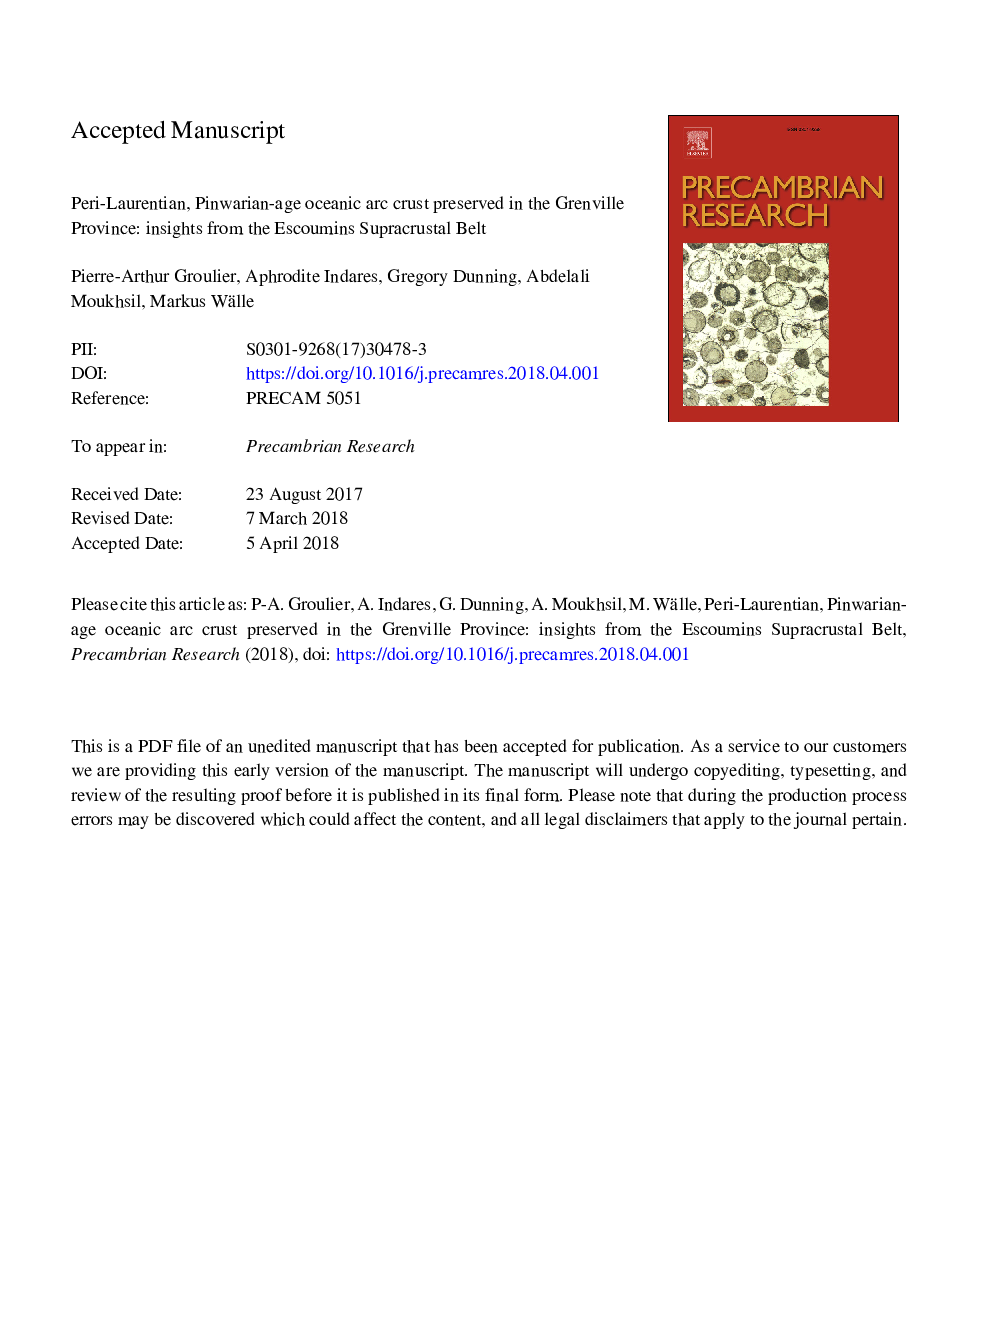 پری لورنتیان، پوسته قوس اقیانوسی پینوریان در استان گنبیل حفظ شده است: مقدمه ای از کمربند سوزاننده اسکوئین